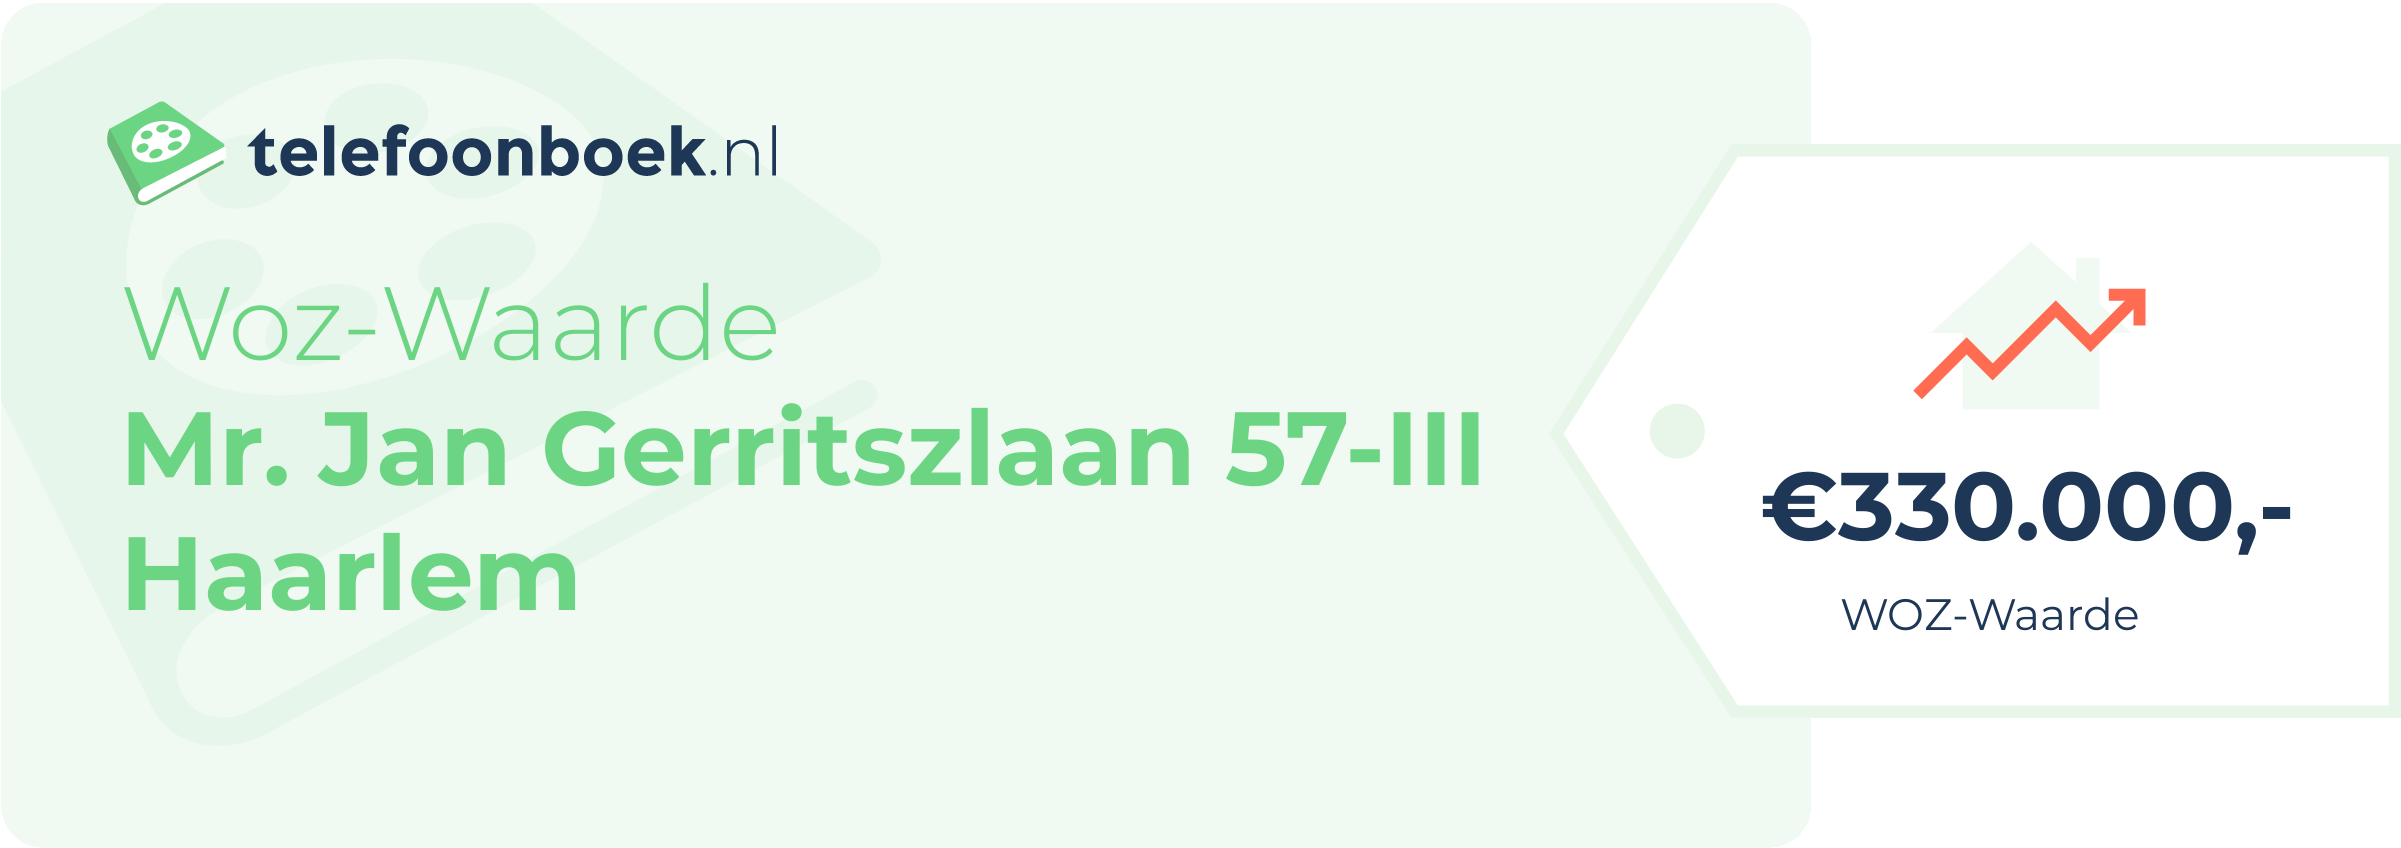 WOZ-waarde Mr. Jan Gerritszlaan 57-III Haarlem